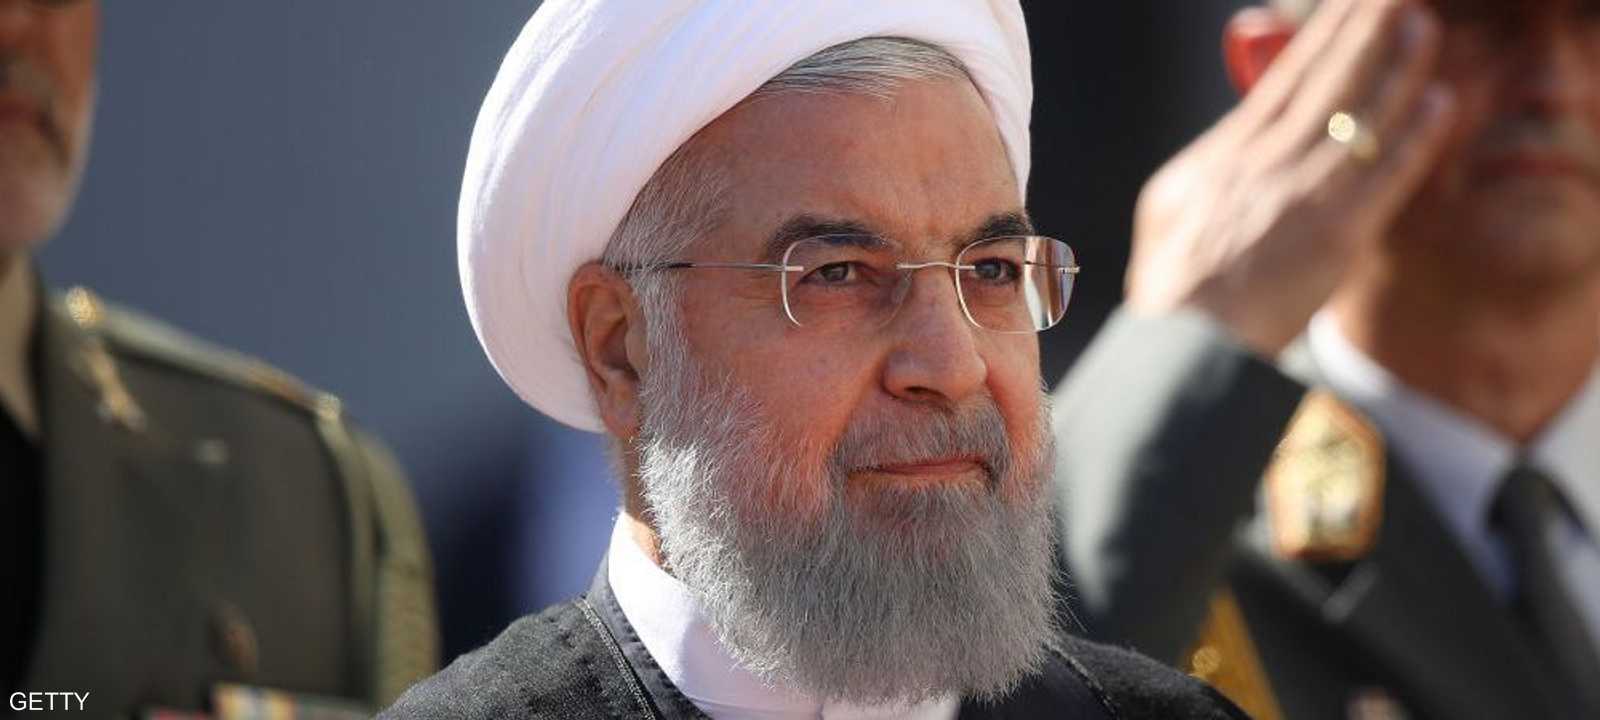 روحاني سيناقش مع المسؤولين العراقيين ملفات سياسية واقتصادية.